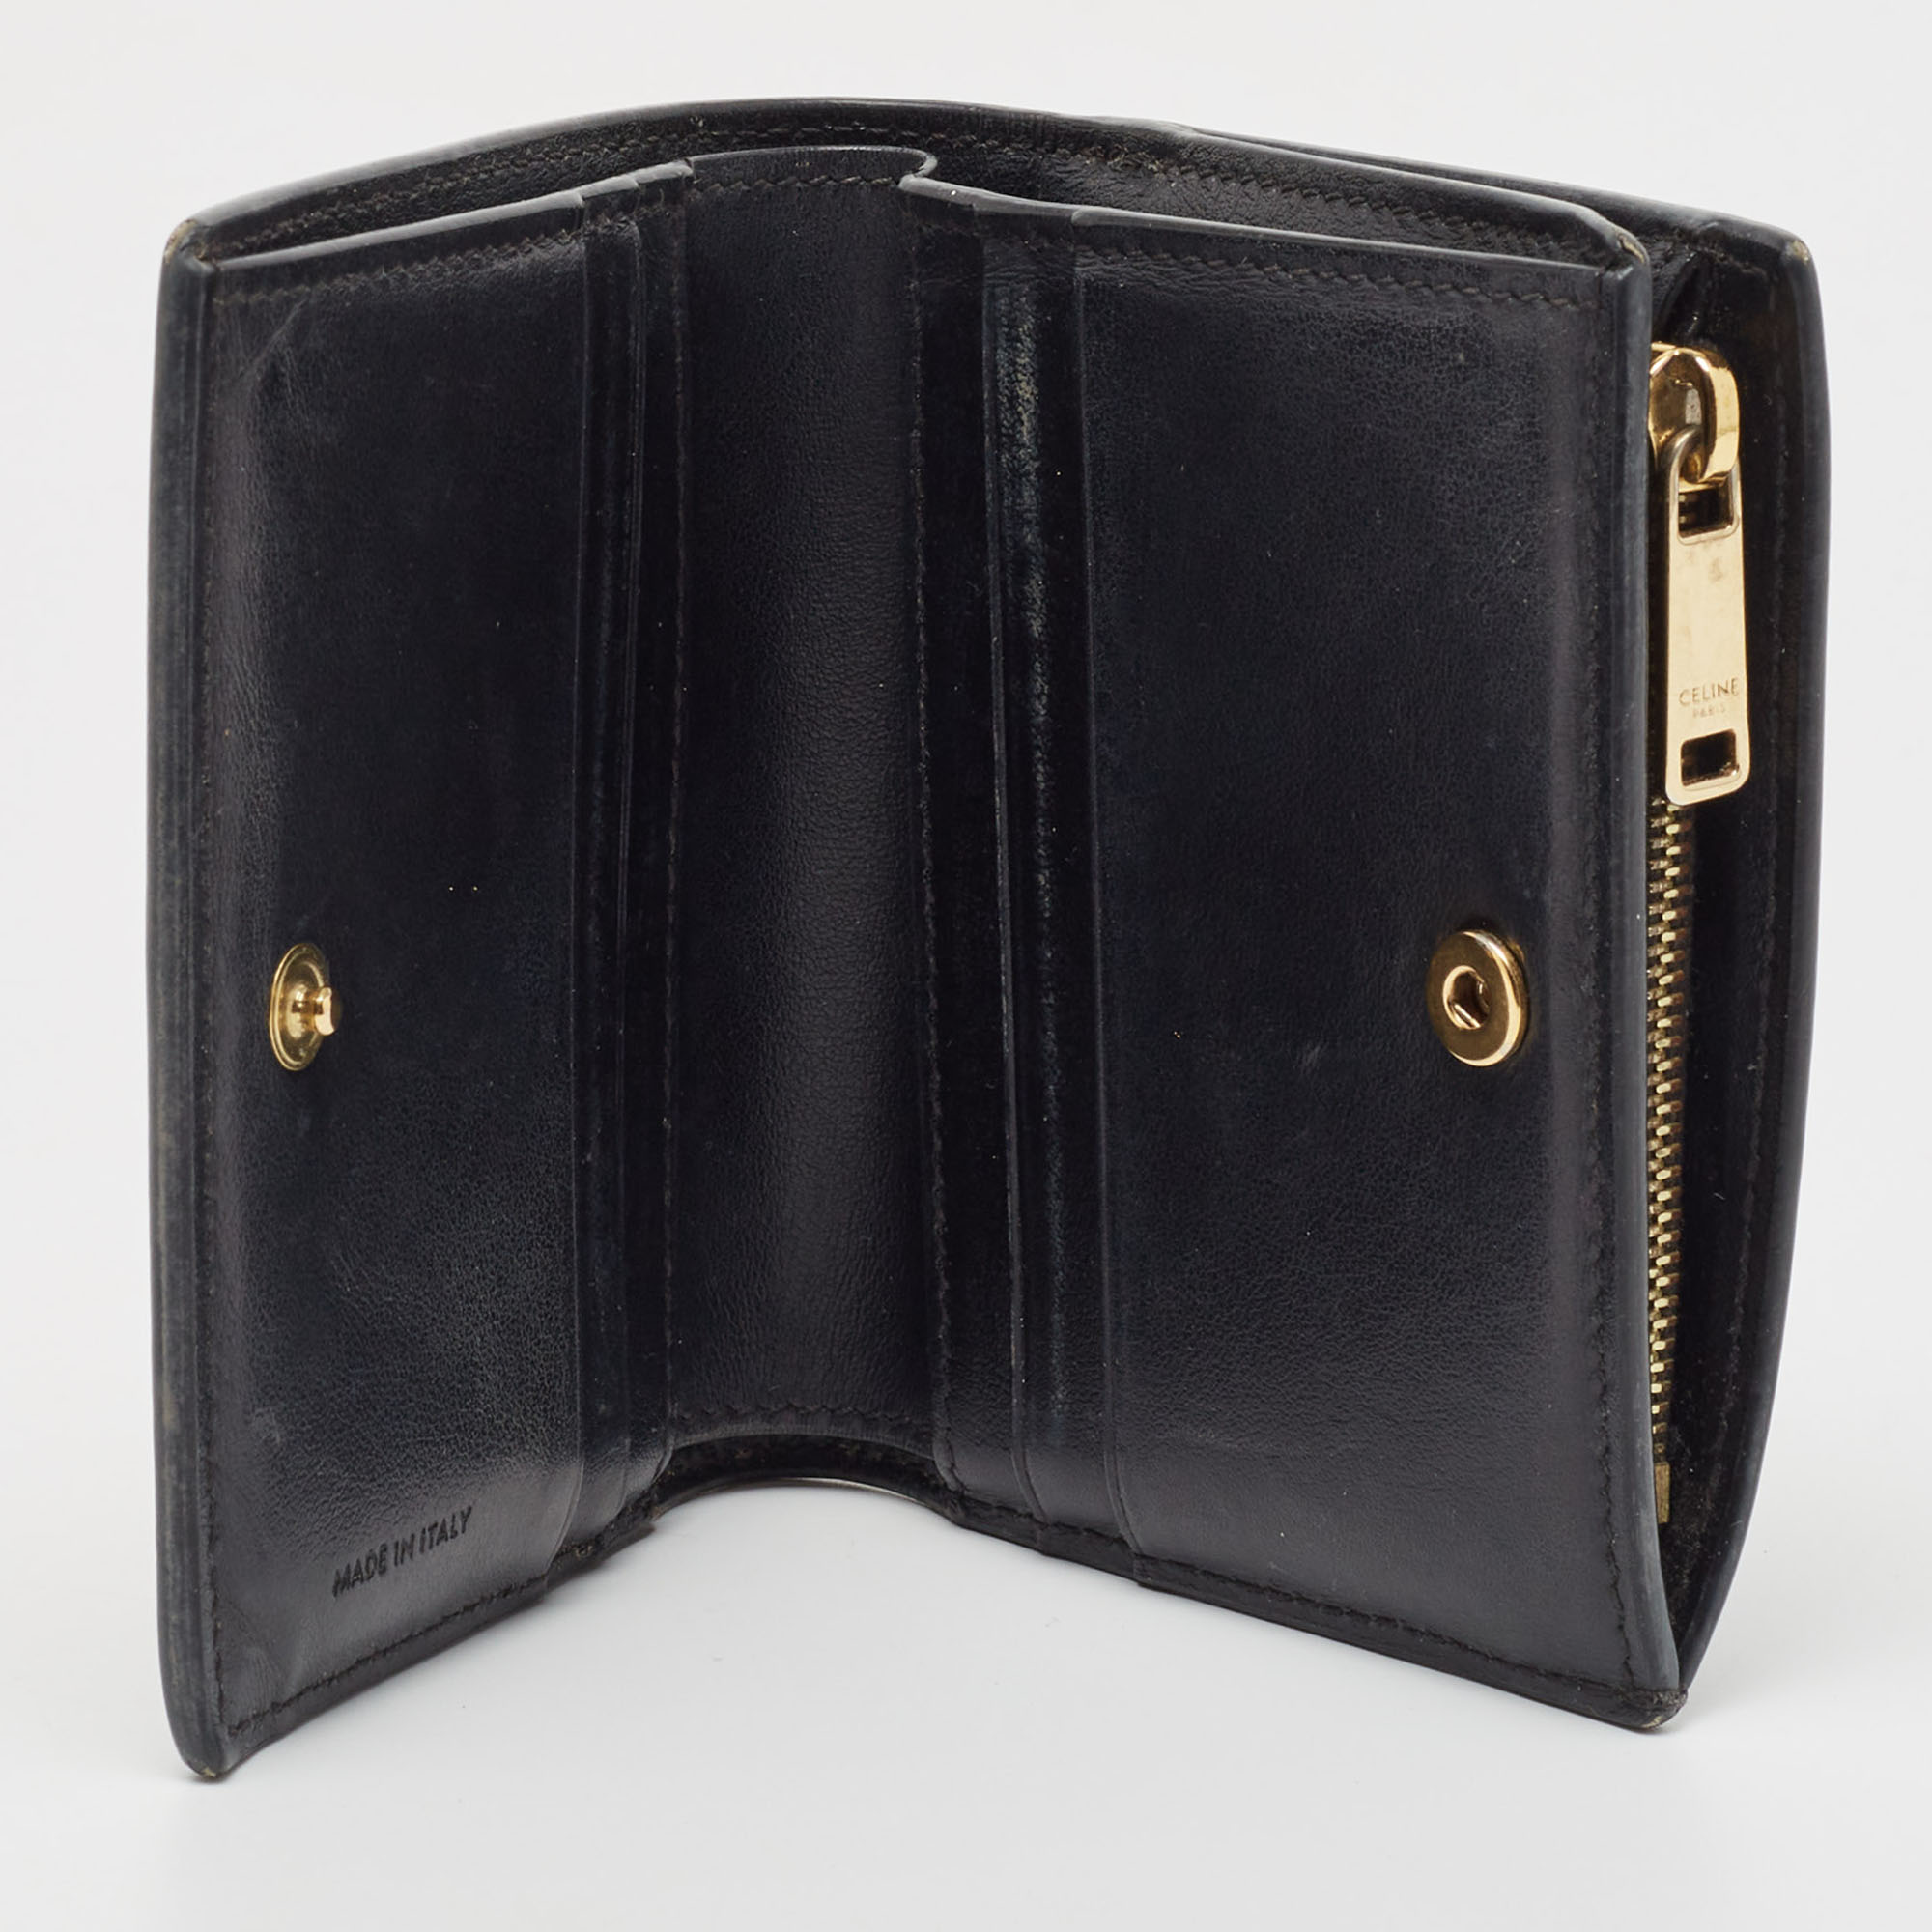 

Celine Black Leather Zip Bifold Compact Wallet